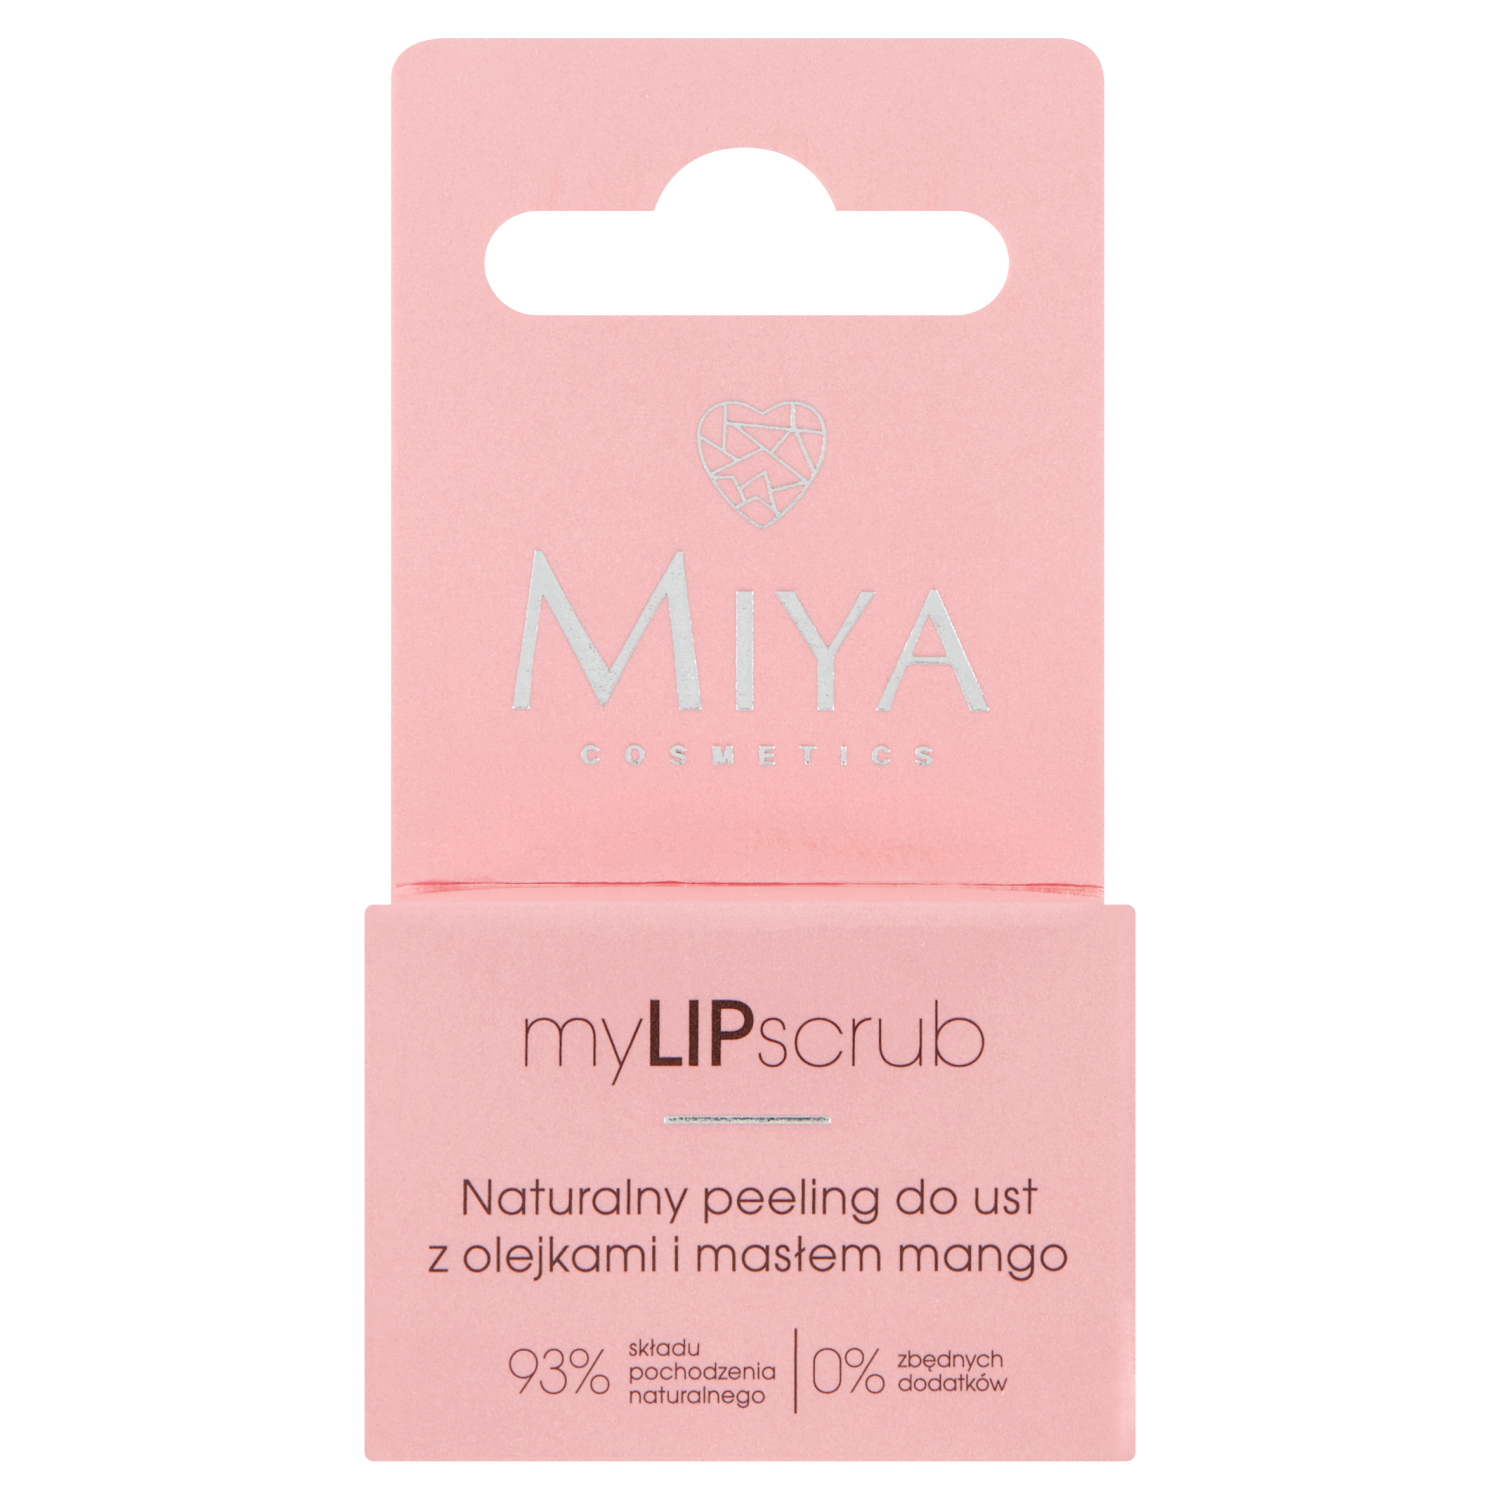 Miya Cosmetics myLIPscrub скраб для губ, 10 г